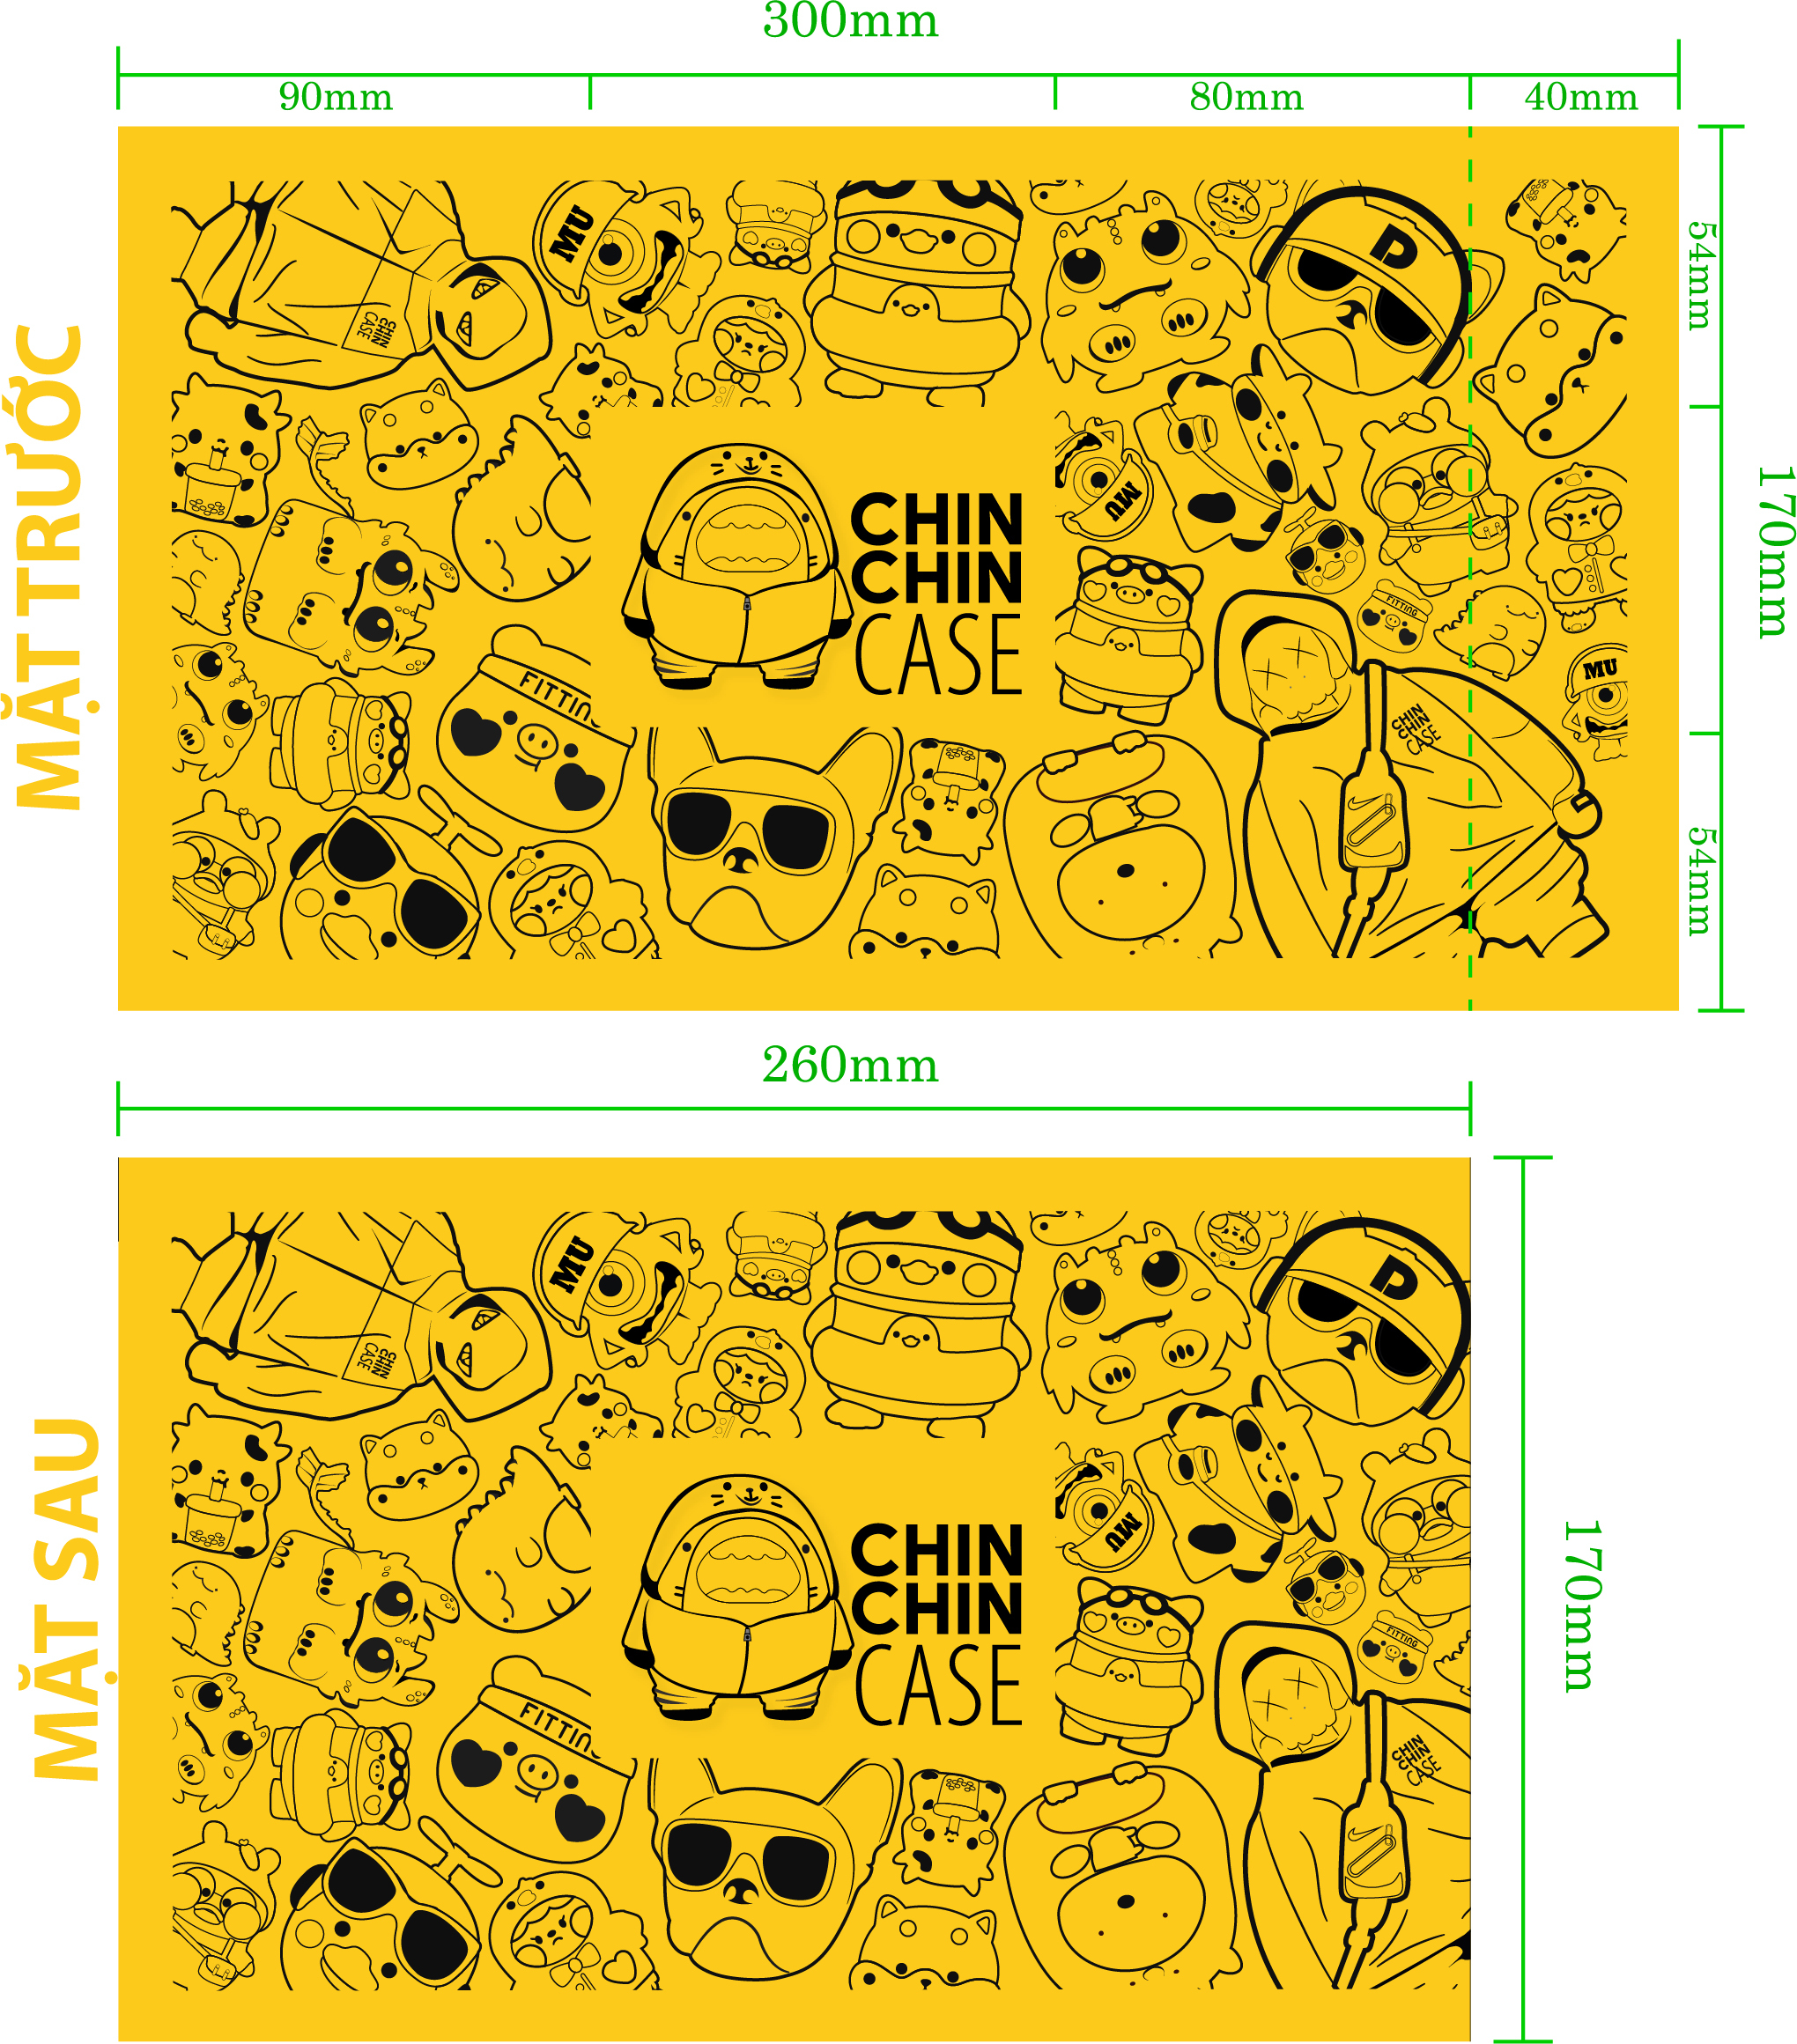 thiết kế in túi gói hàng của Chin Chin case